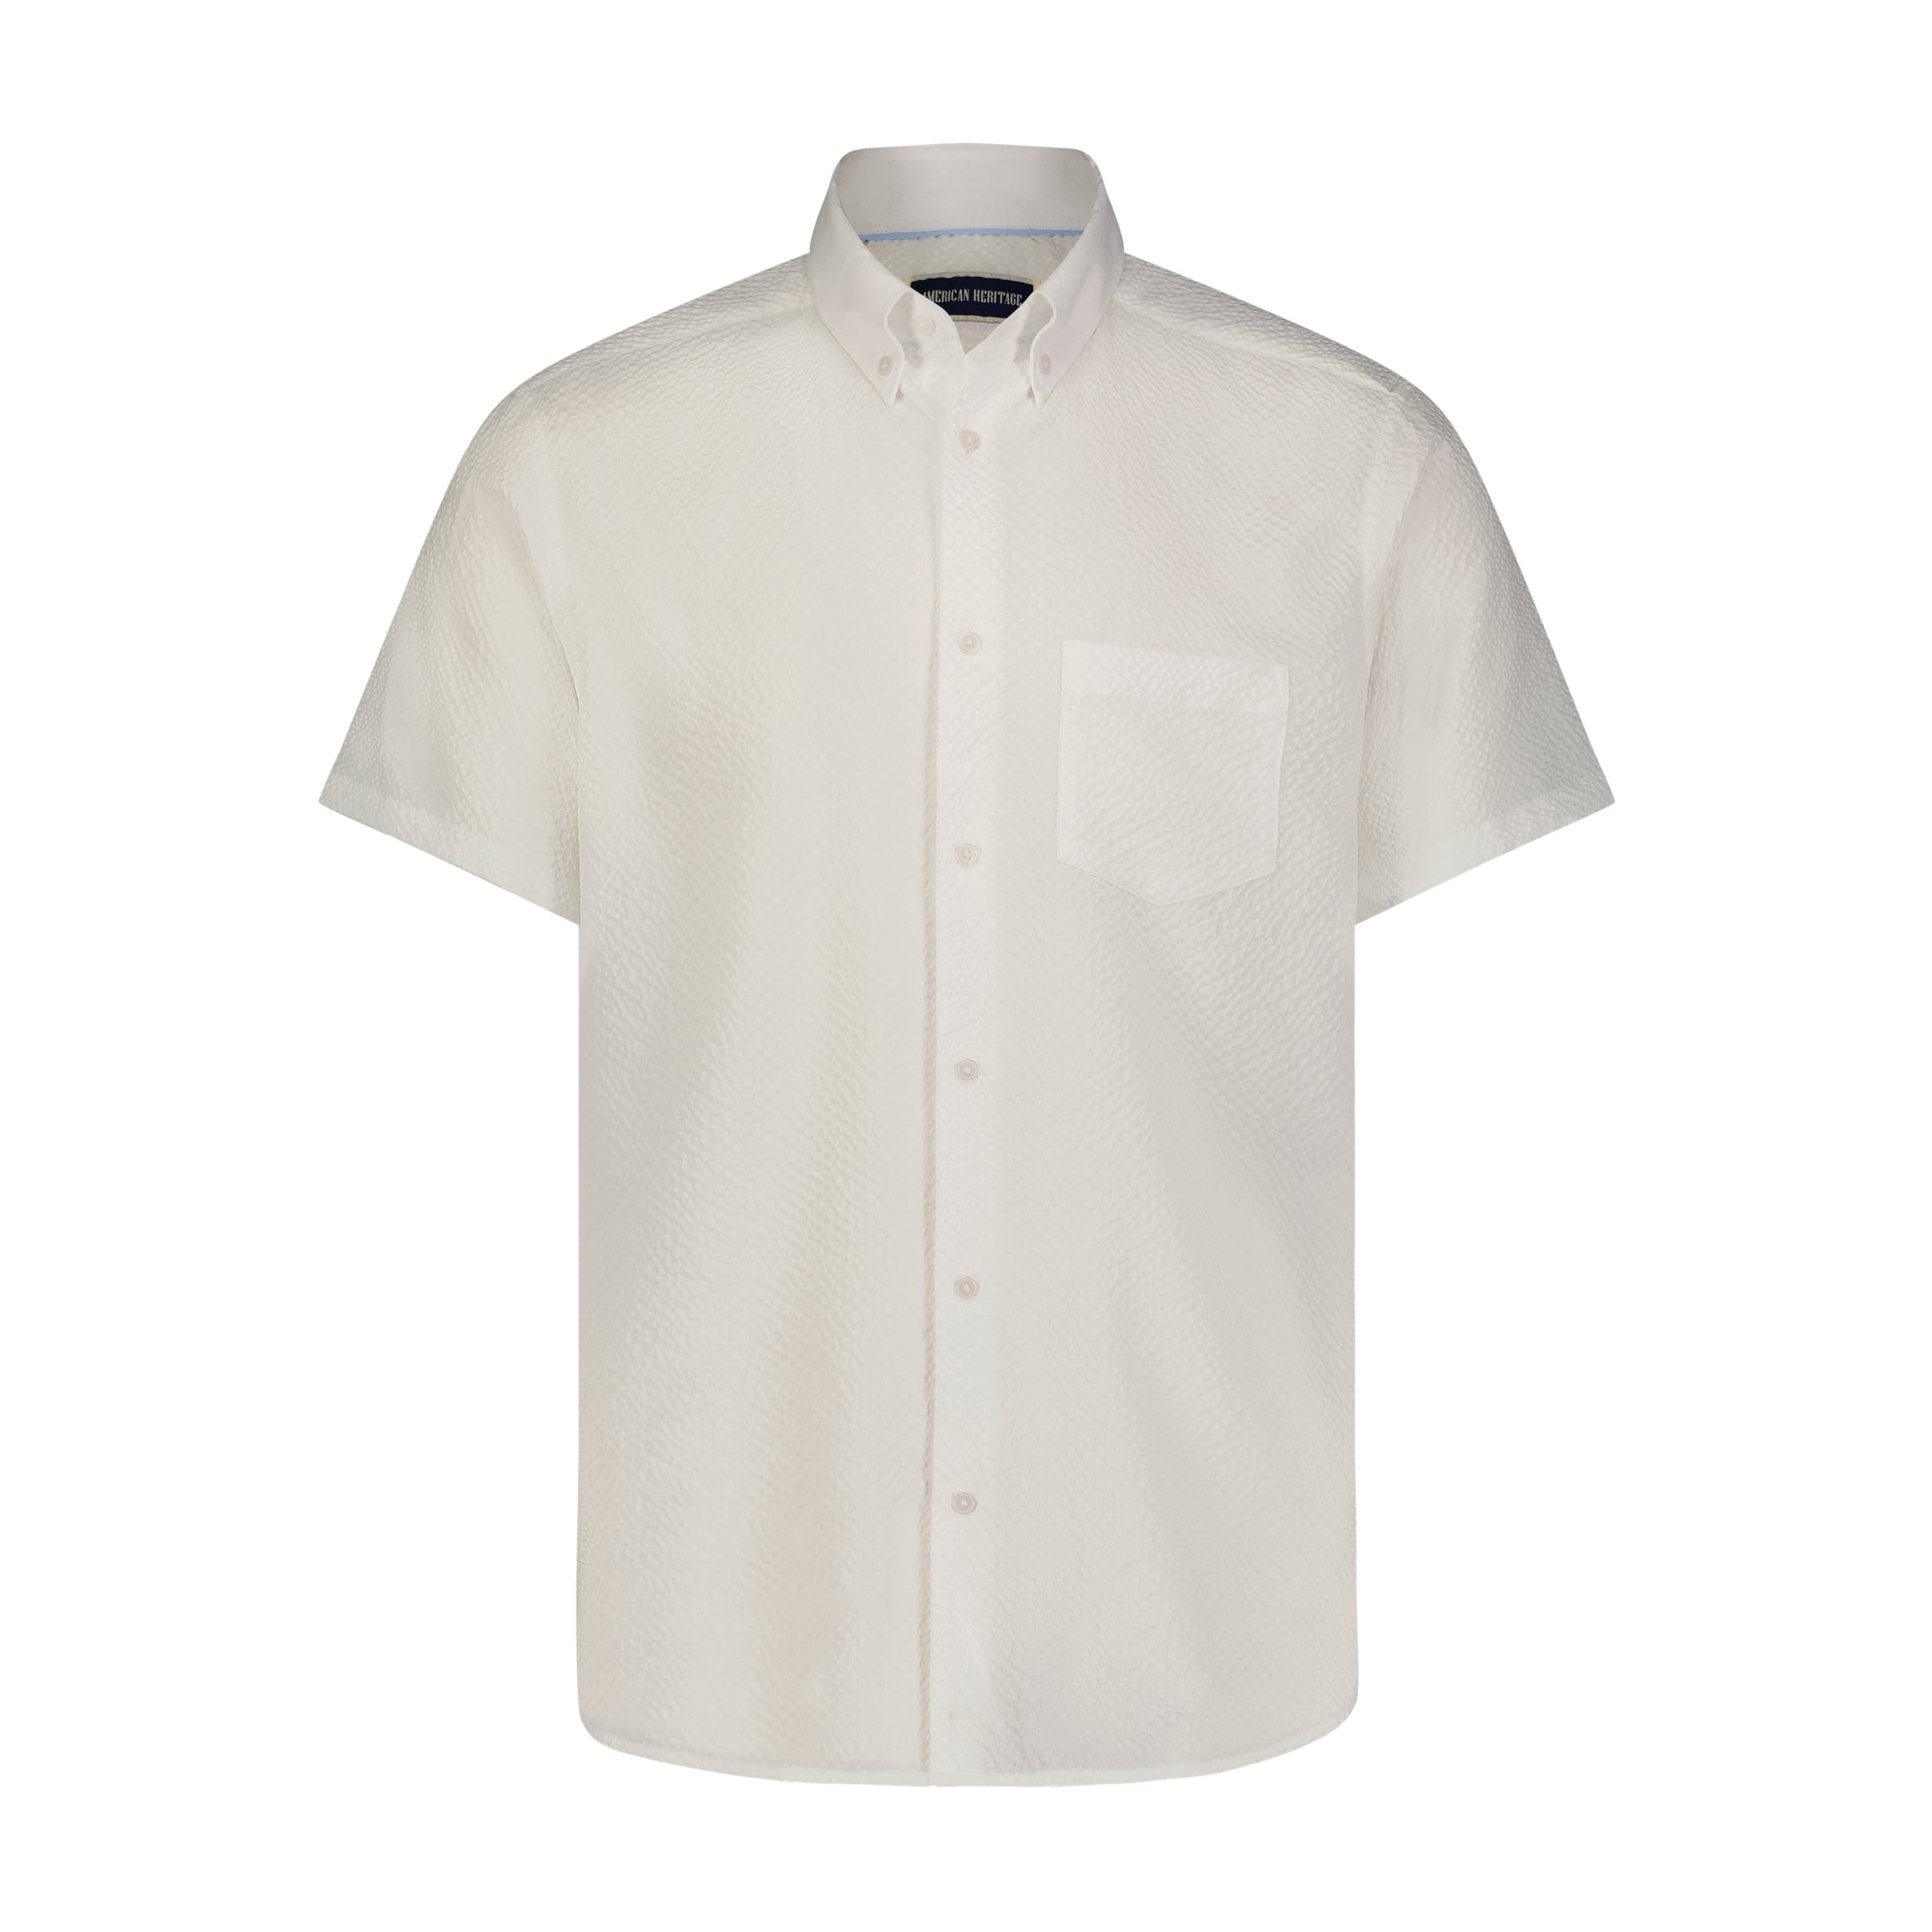 White Seer Sucker Stretch Button Down Short Sleeve Shirt